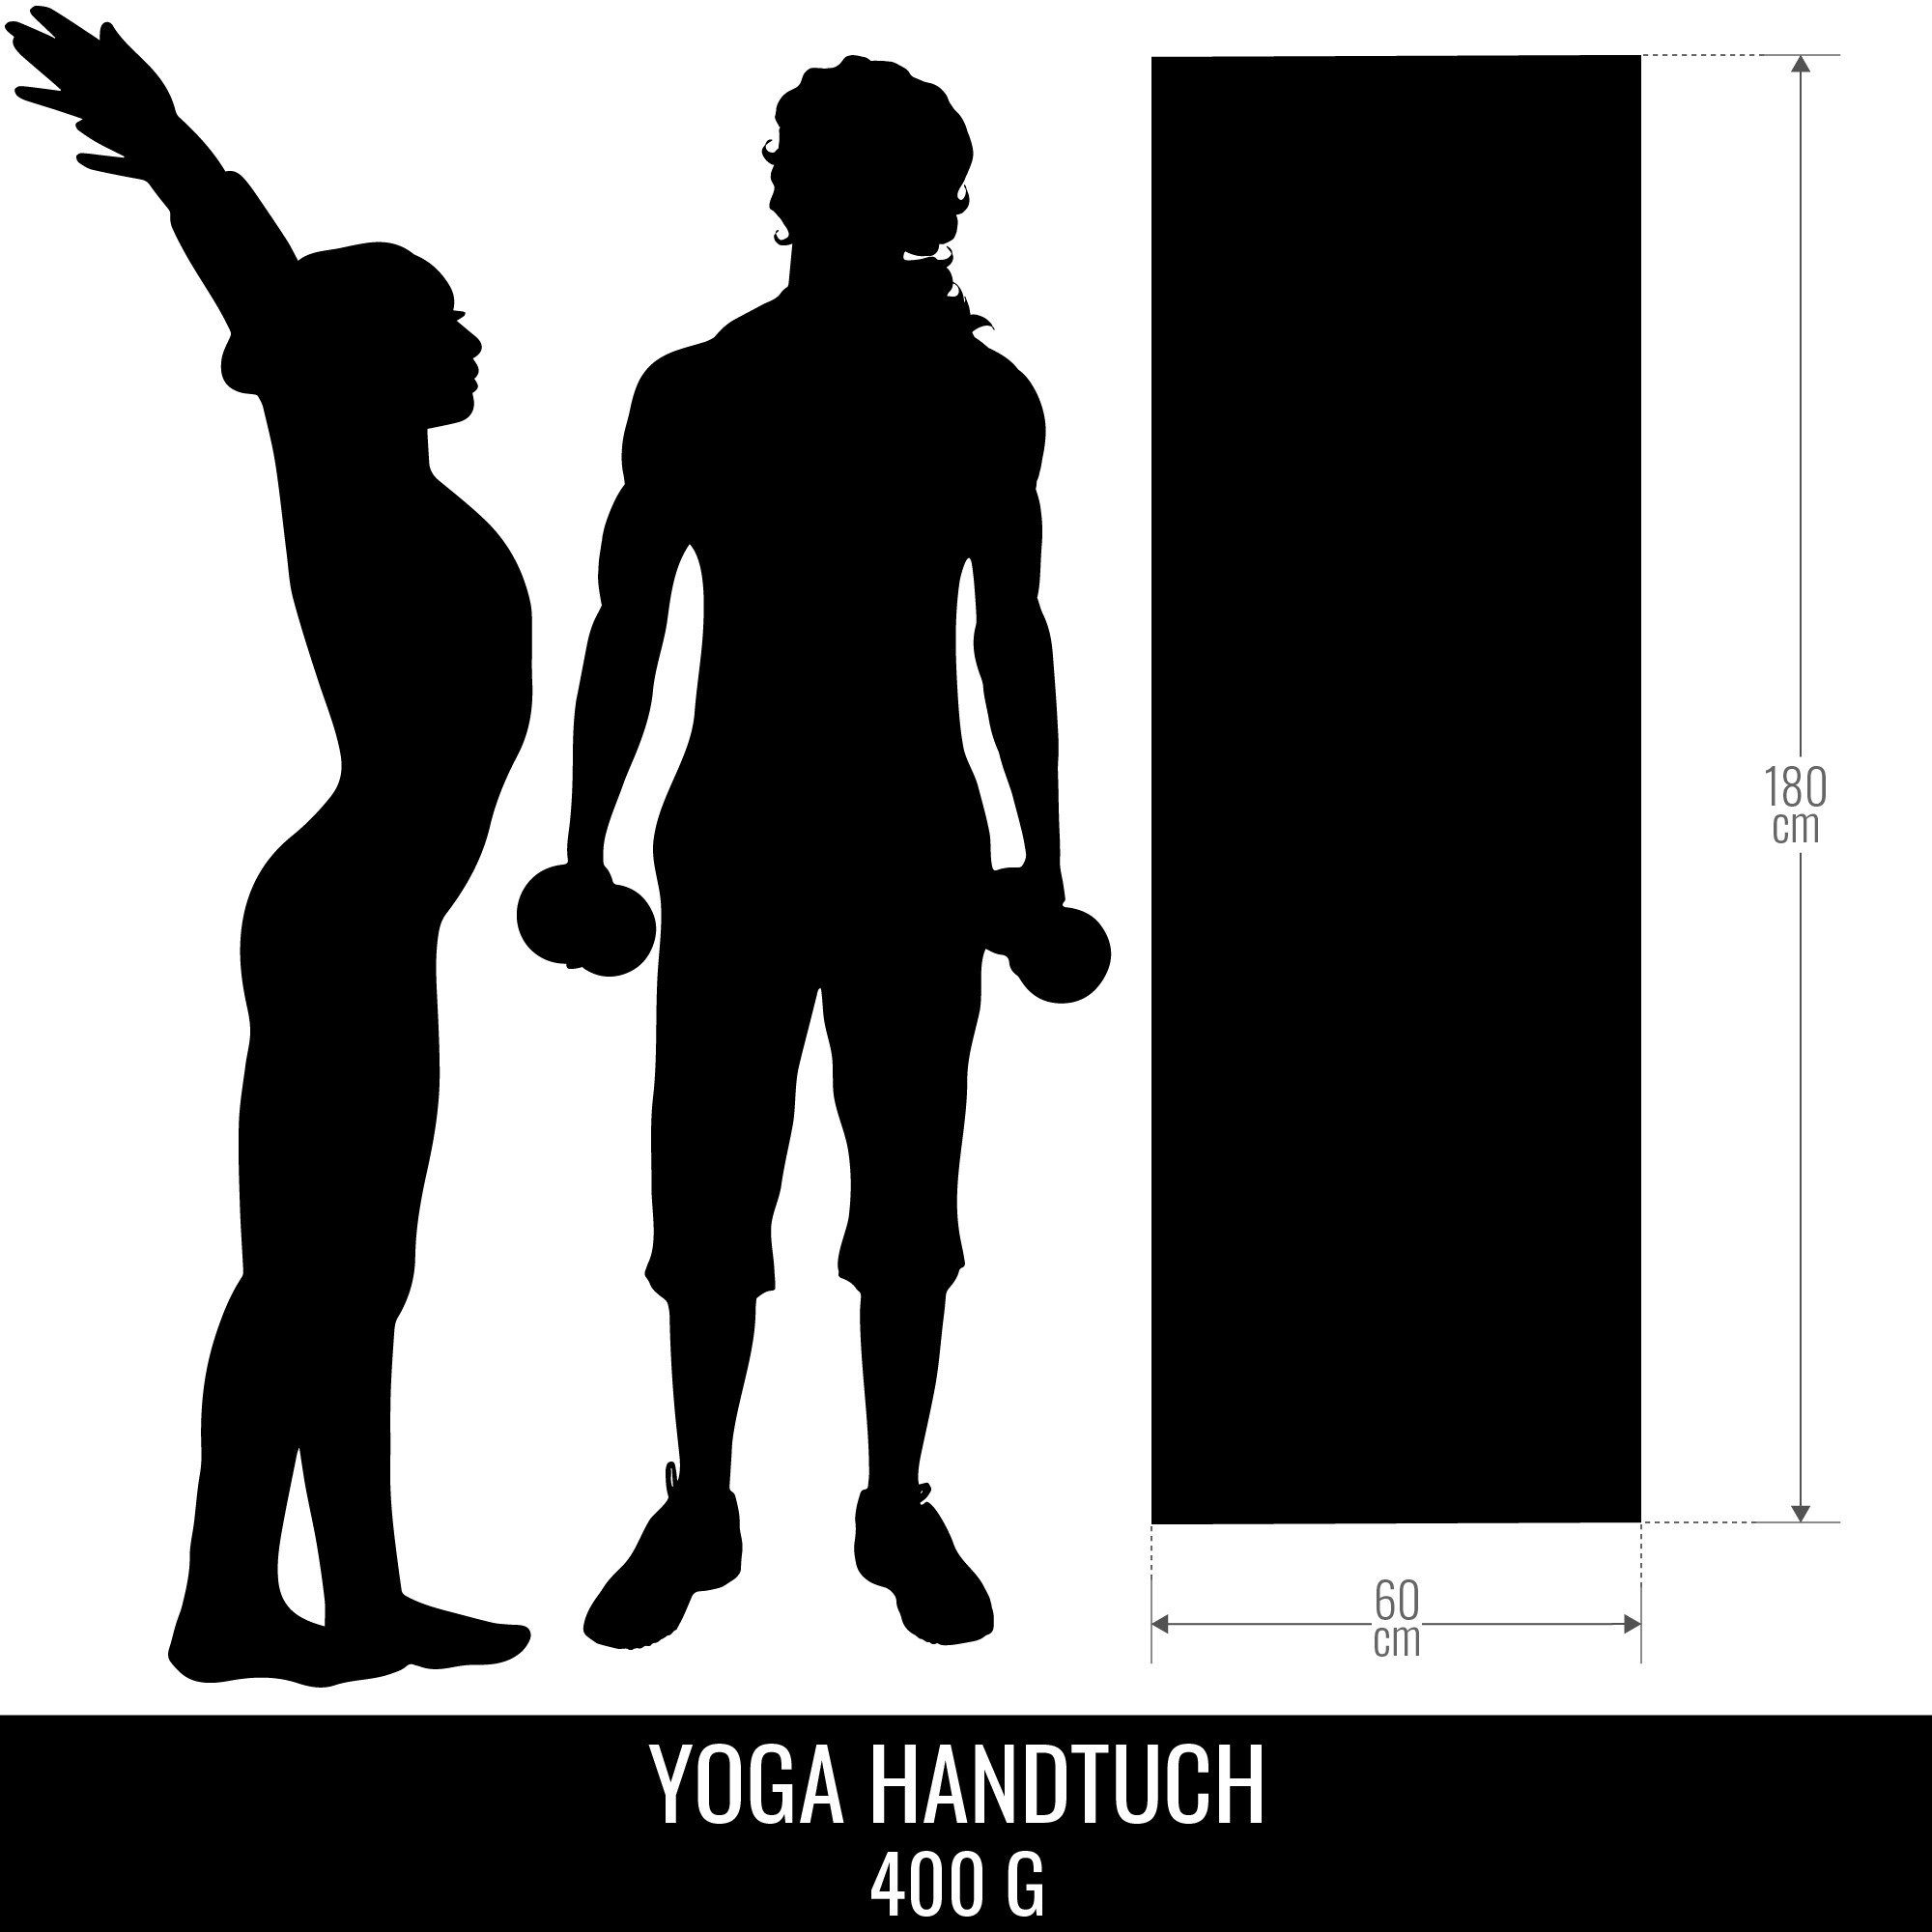 GORILLA SPORTS Sporthandtuch Yoga Saugfähig, Dunkelrot Towel, Schnelltrocknend 180x60cm, Handtuch Strandtuch